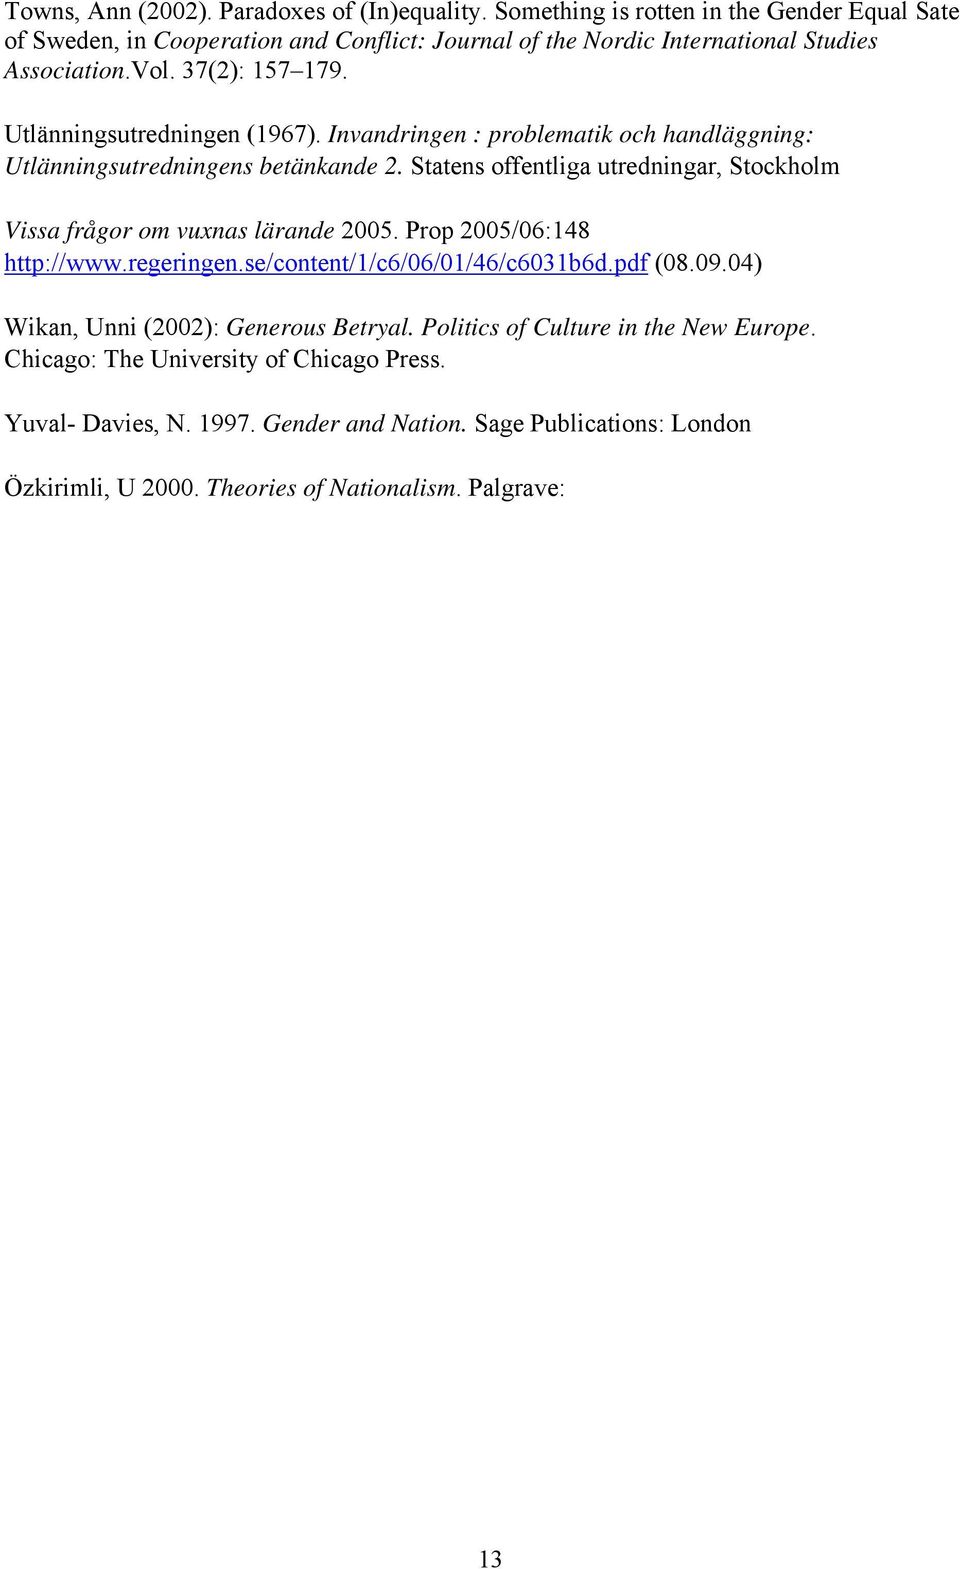 Utlänningsutredningen (1967). Invandringen : problematik och handläggning: Utlänningsutredningens betänkande 2.